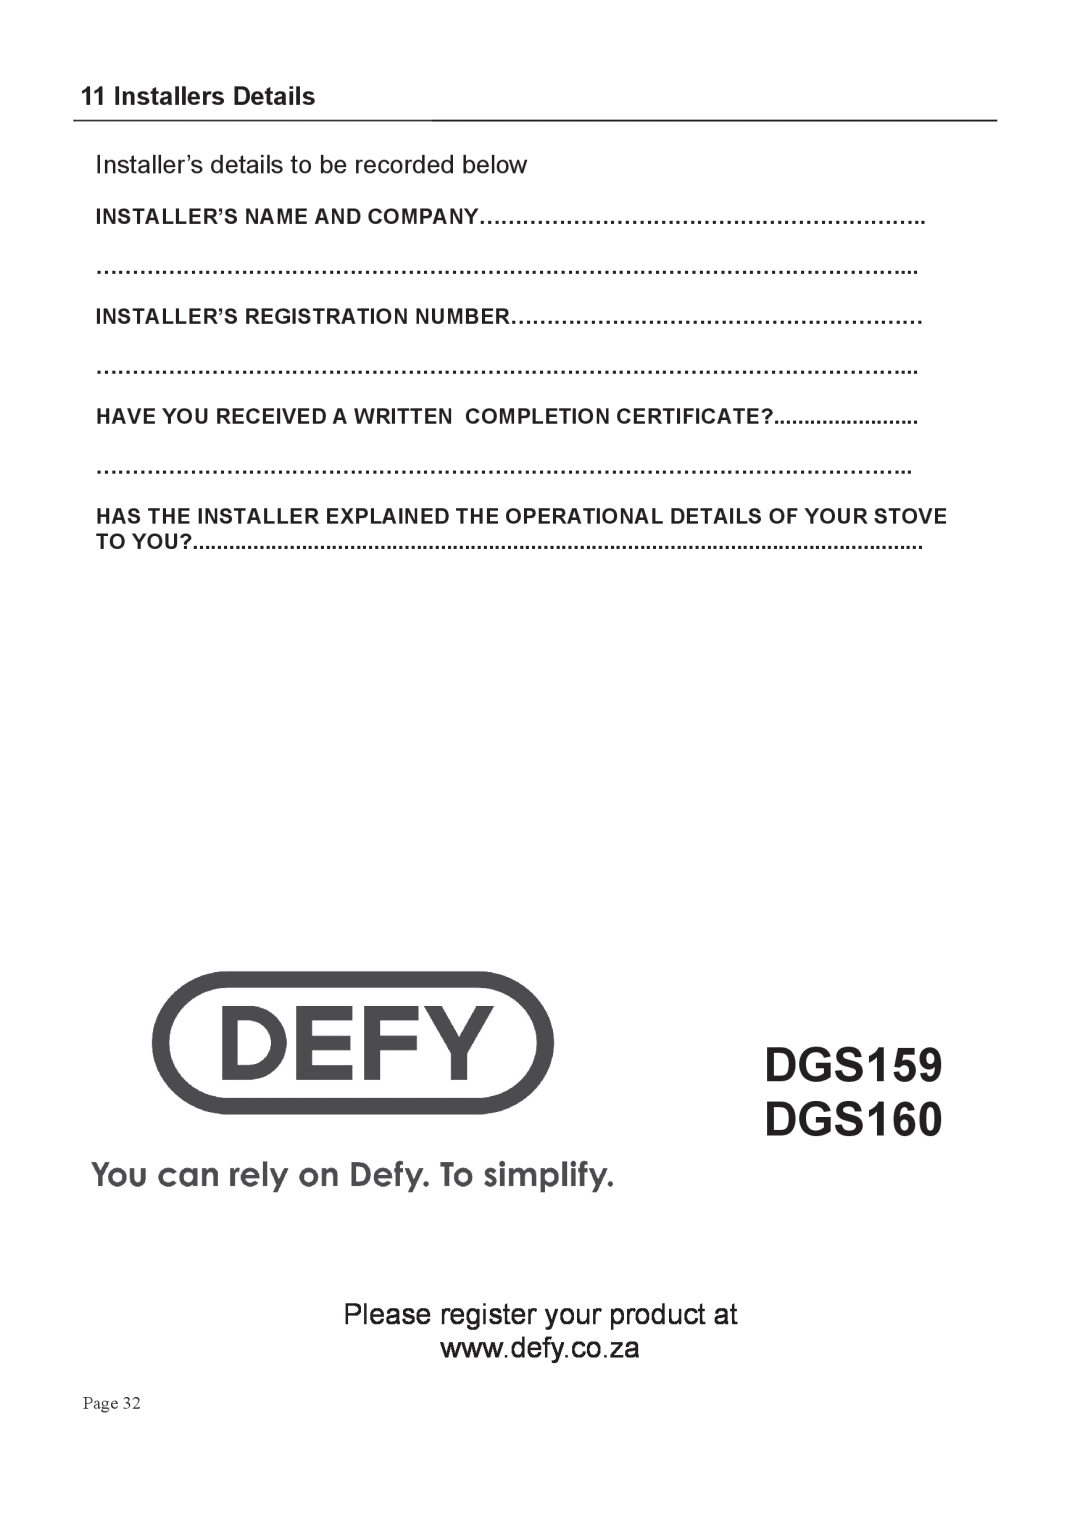 Defy Appliances DGS159, DGS160 manual #++&,#-+, M ! ###, 0+! 8#$# 8%#% 